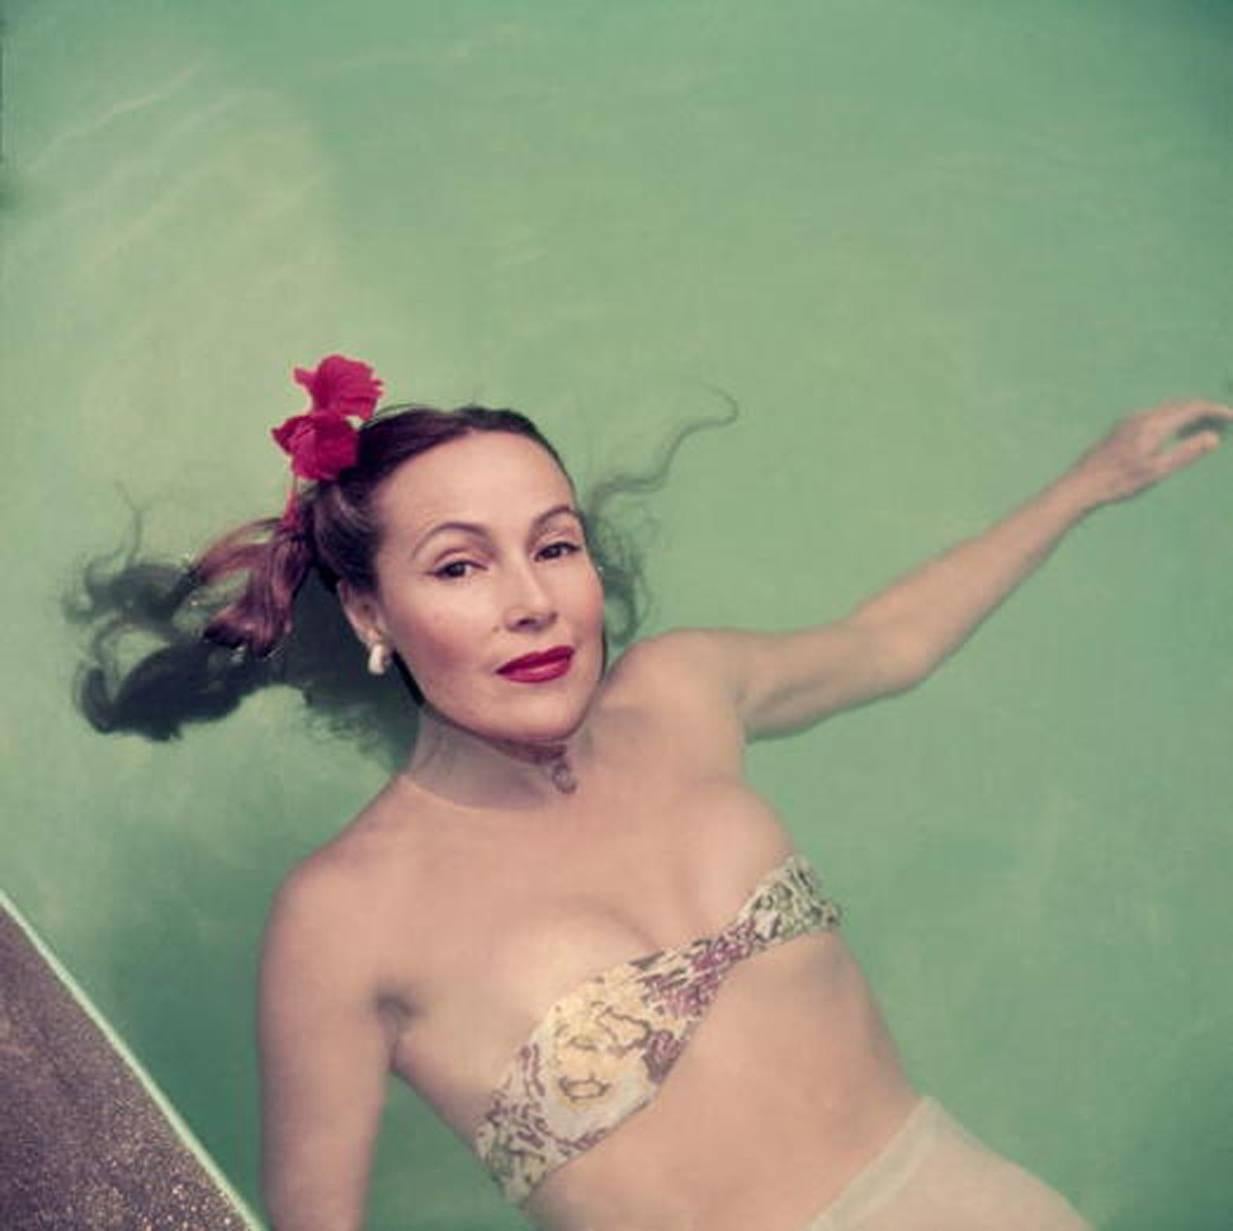 Der mexikanische Filmstar Dolores Del Rio (1905 - 1983) schwimmt in einem Schwimmbad in Acapulco, 1952.

20 x 20 Zoll
$2500

Nachlassgestempelte und handnummerierte Auflage von 150 Stück mit Echtheitszertifikat des Nachlasses. 
Slim Aarons Estate